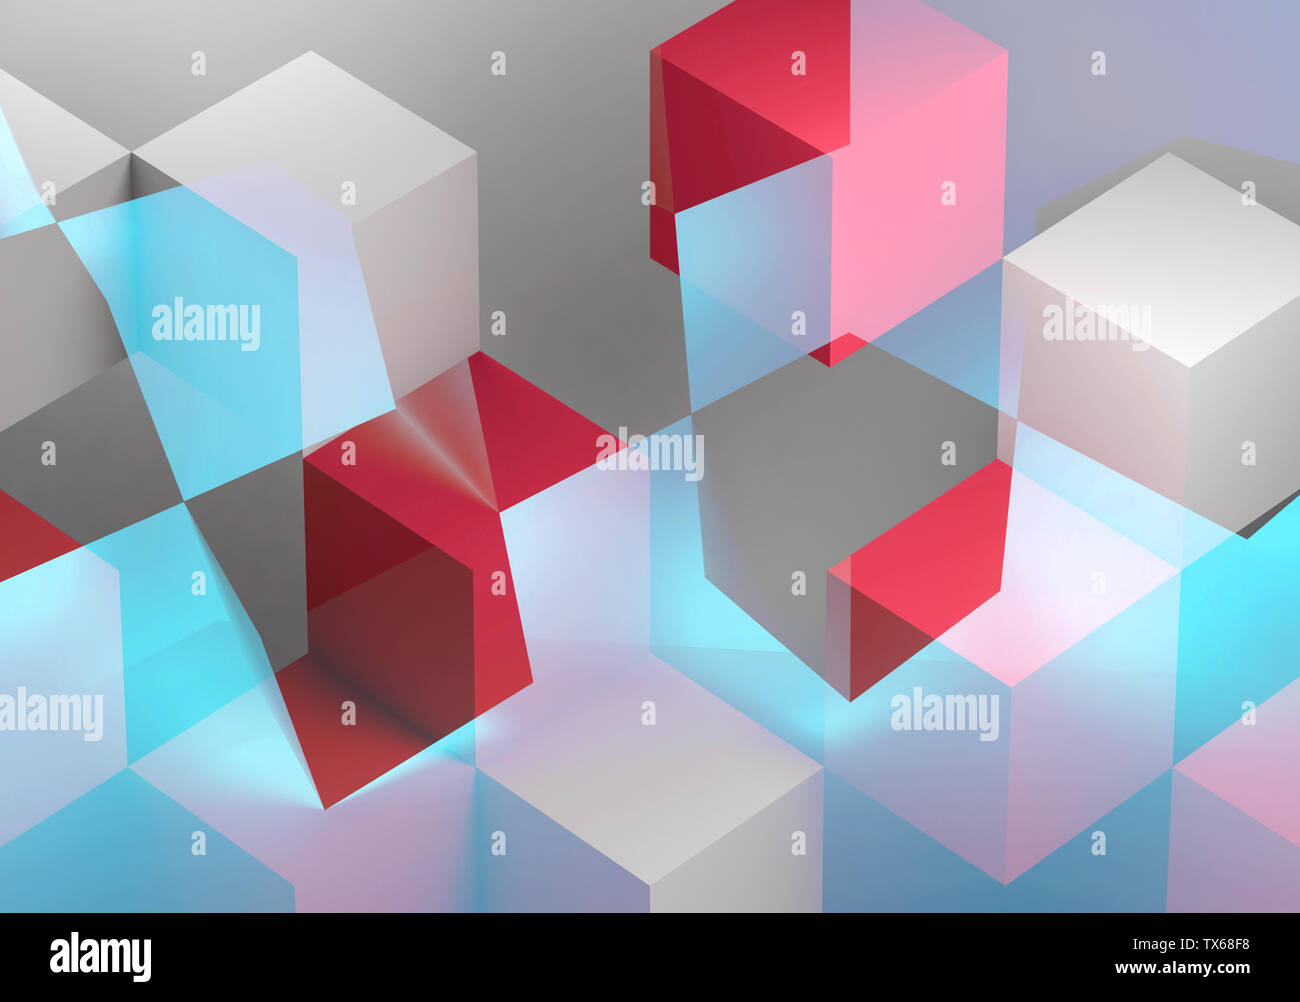 Abstrakte Digitale grafik hintergrund, geschnitten Weiß, Blau und Rot Würfel Strukturen. 3D Rendering illustration Stockfoto